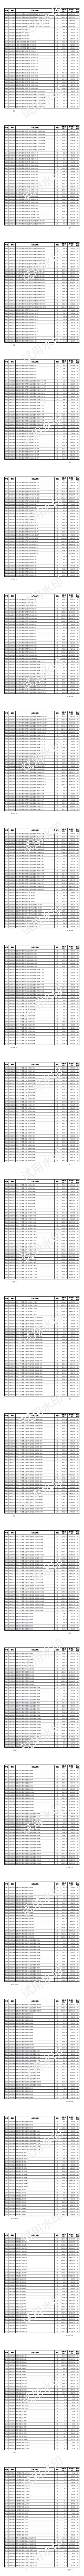 上海水务工程价格信息（2023年4月第三期）_04.png